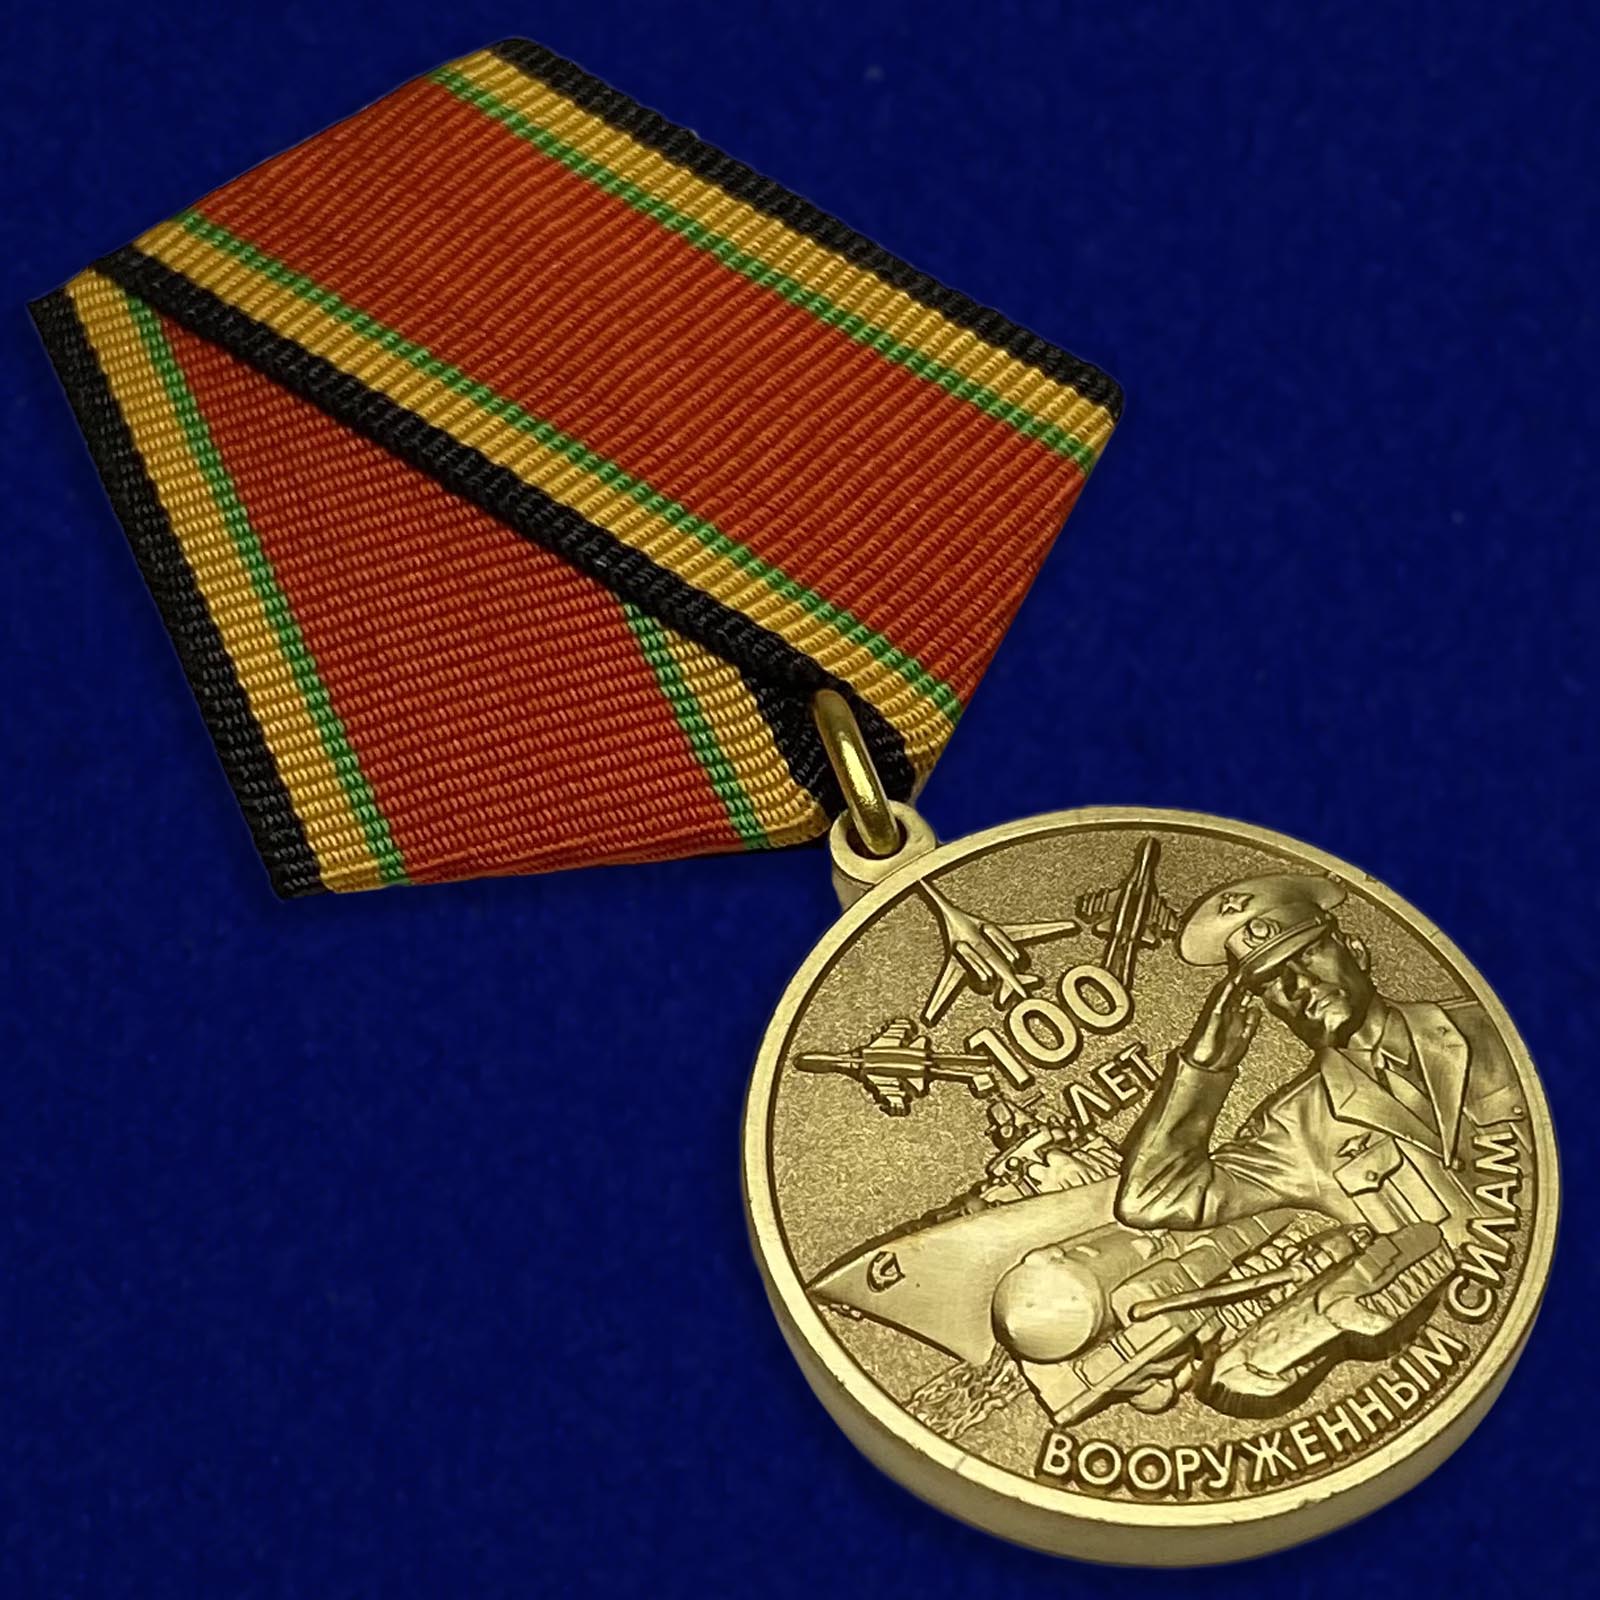 Купить юбилейную медаль "100-летие Вооруженных сил России"